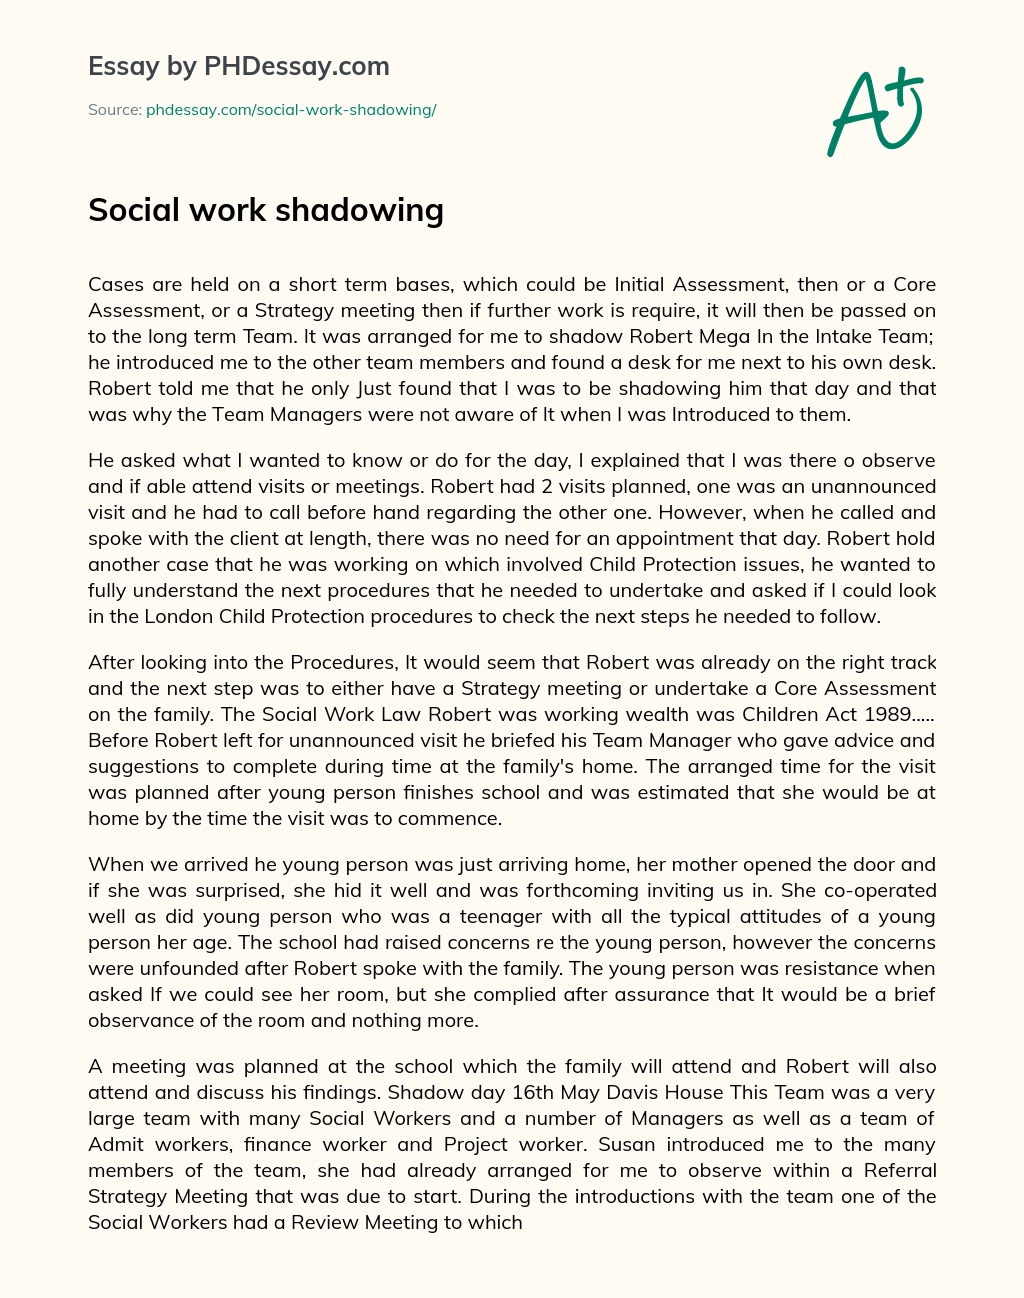 Social work shadowing essay